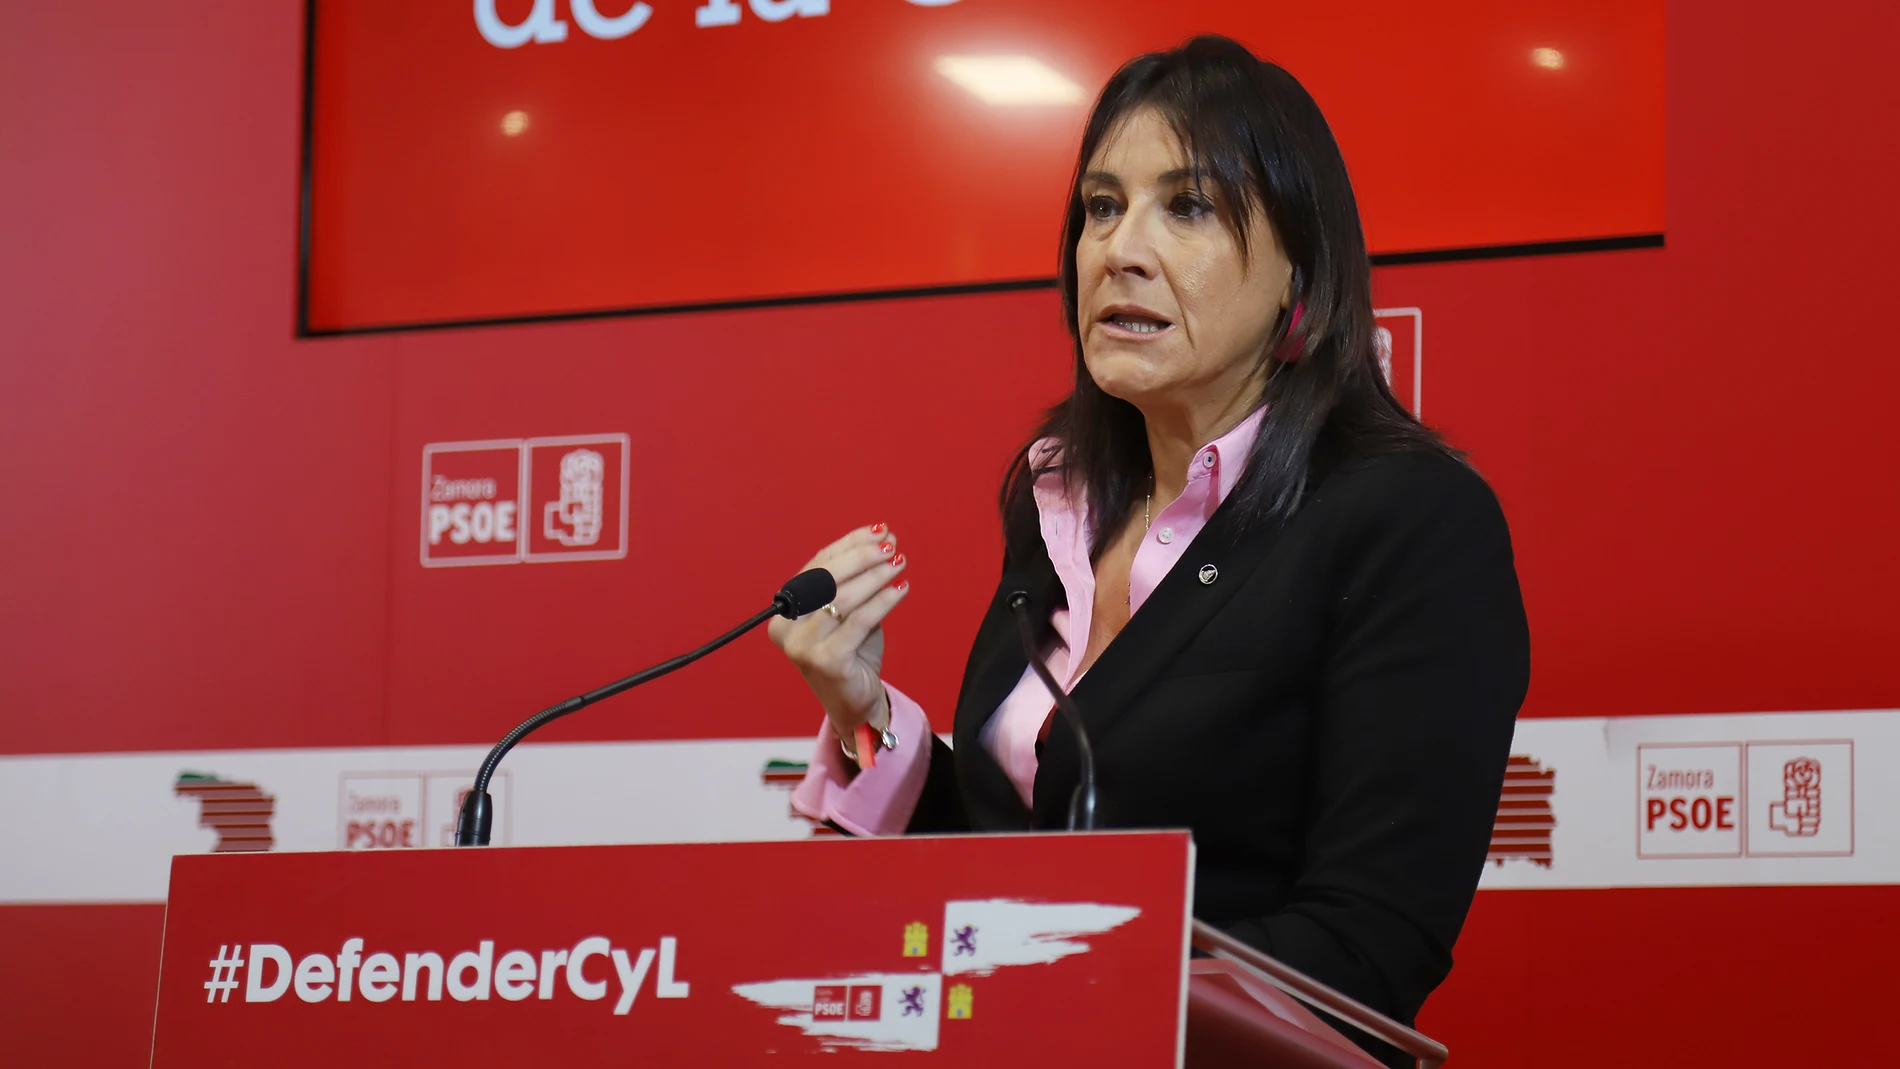 La secretaria de Organización del PSOECyL y procuradora por Zamora, Ana Sánchez, analiza temas de actualidad